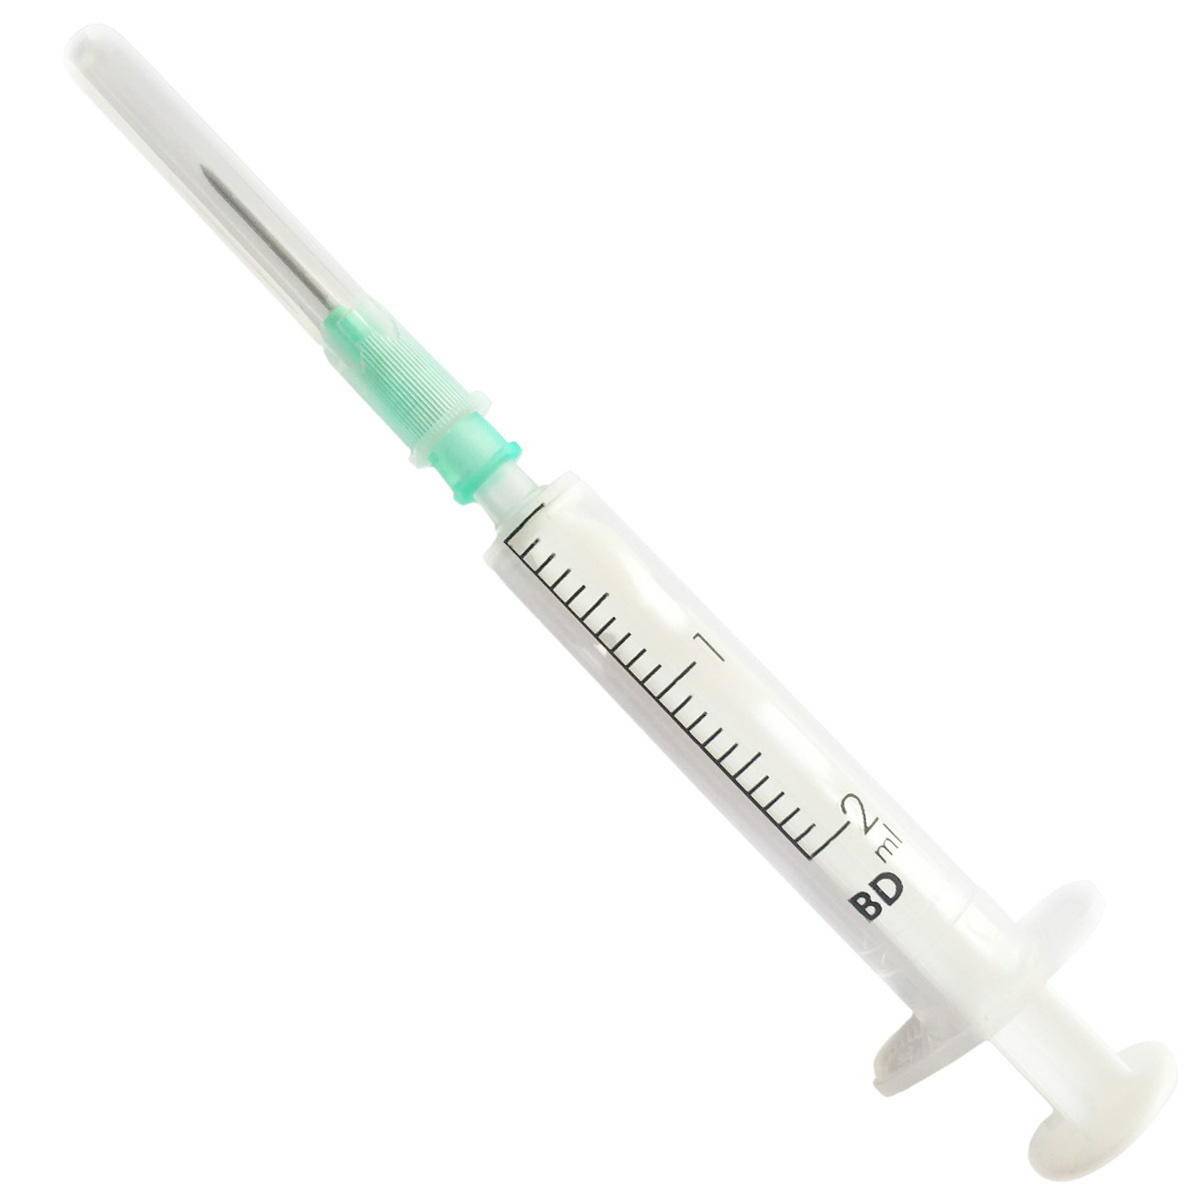 2ml + 21g 5/8" BD Discardit Luer Slip Syringe and Needle - UKMEDI